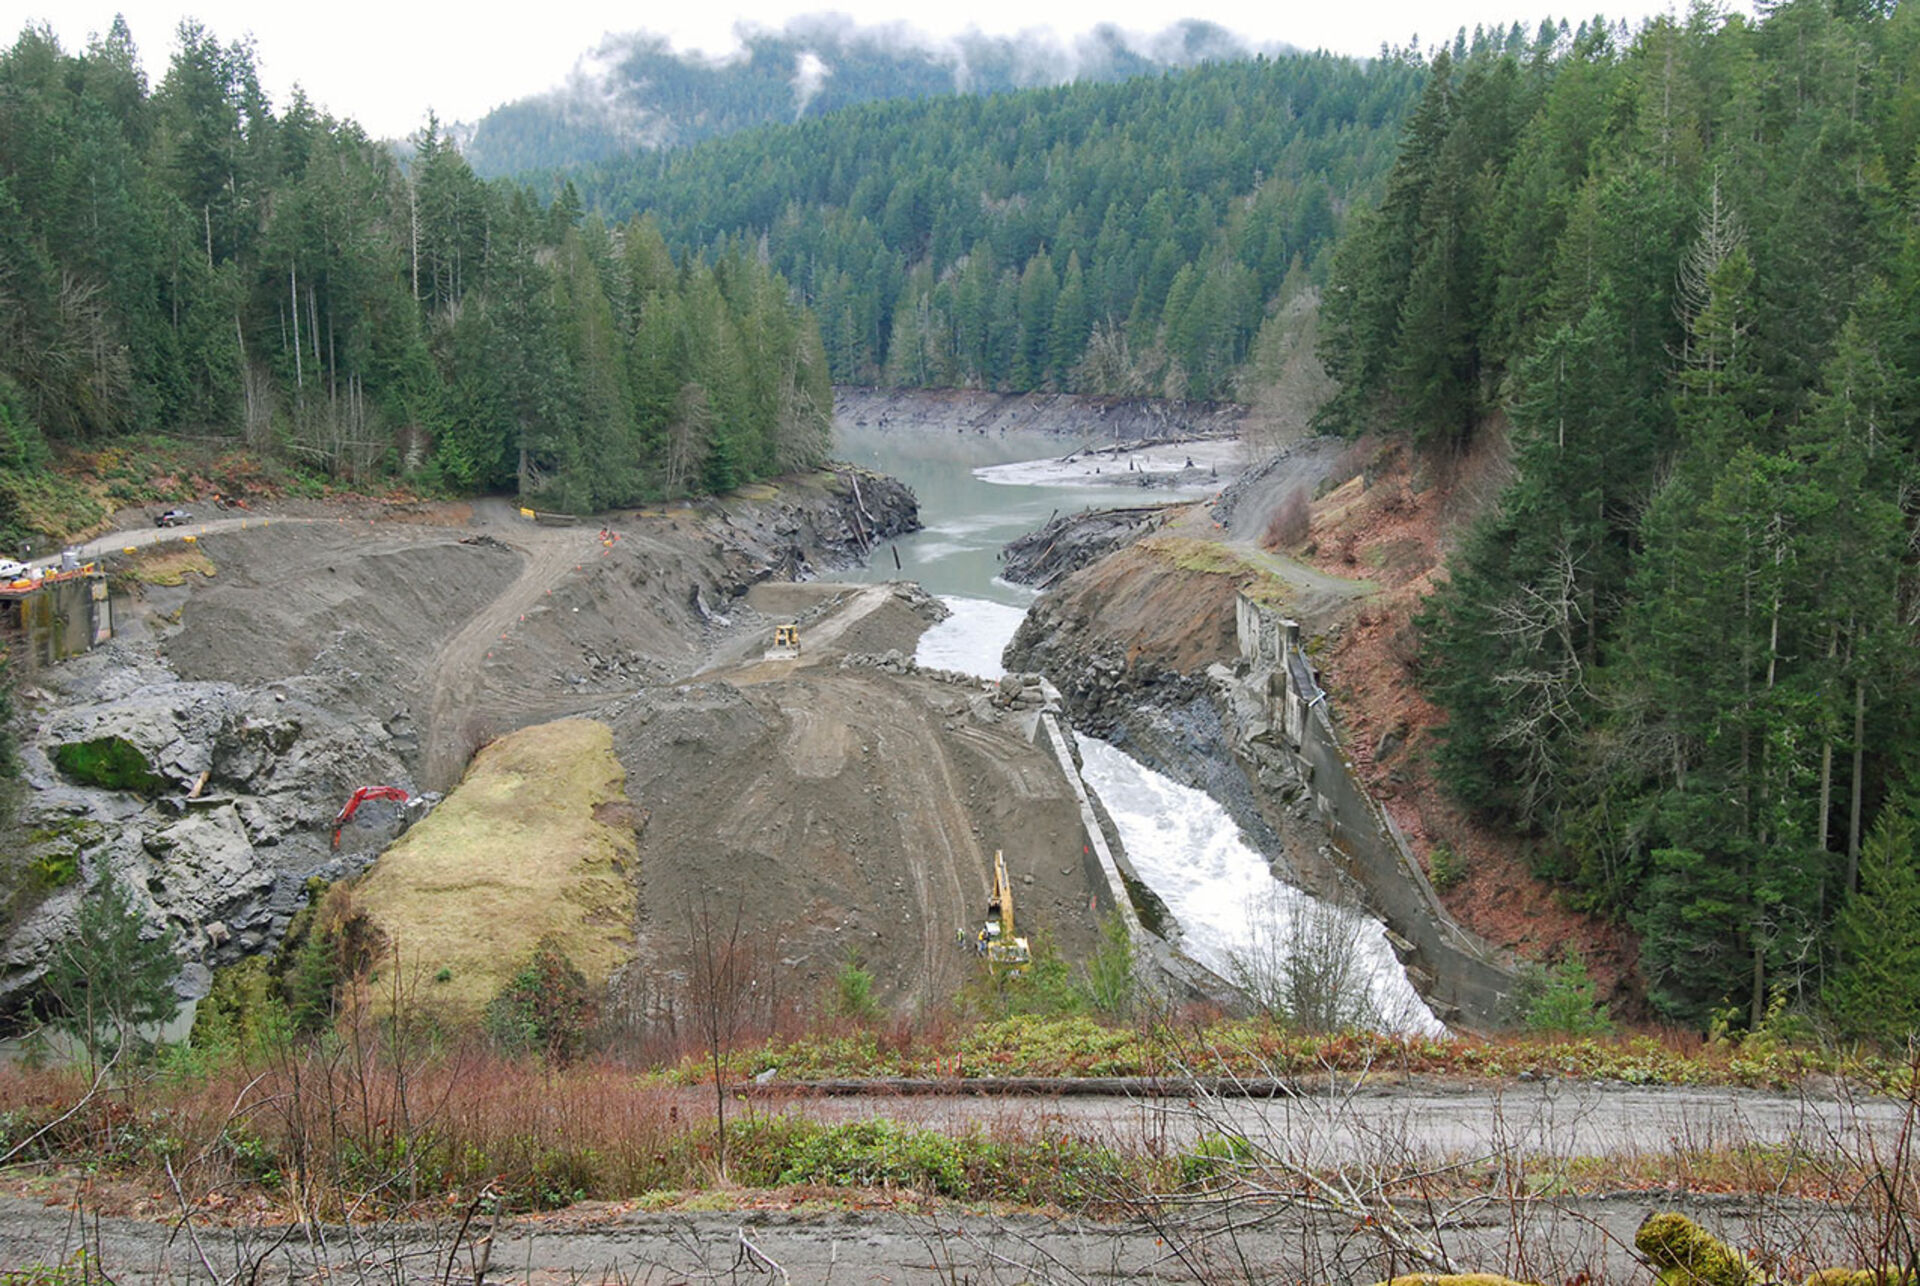  Am Fluss Elwha im Bundesstaat Washington wurde für die Rückkehr der Lachse ein Damm rückgebaut. © Ben Cody | wikipedia.org  